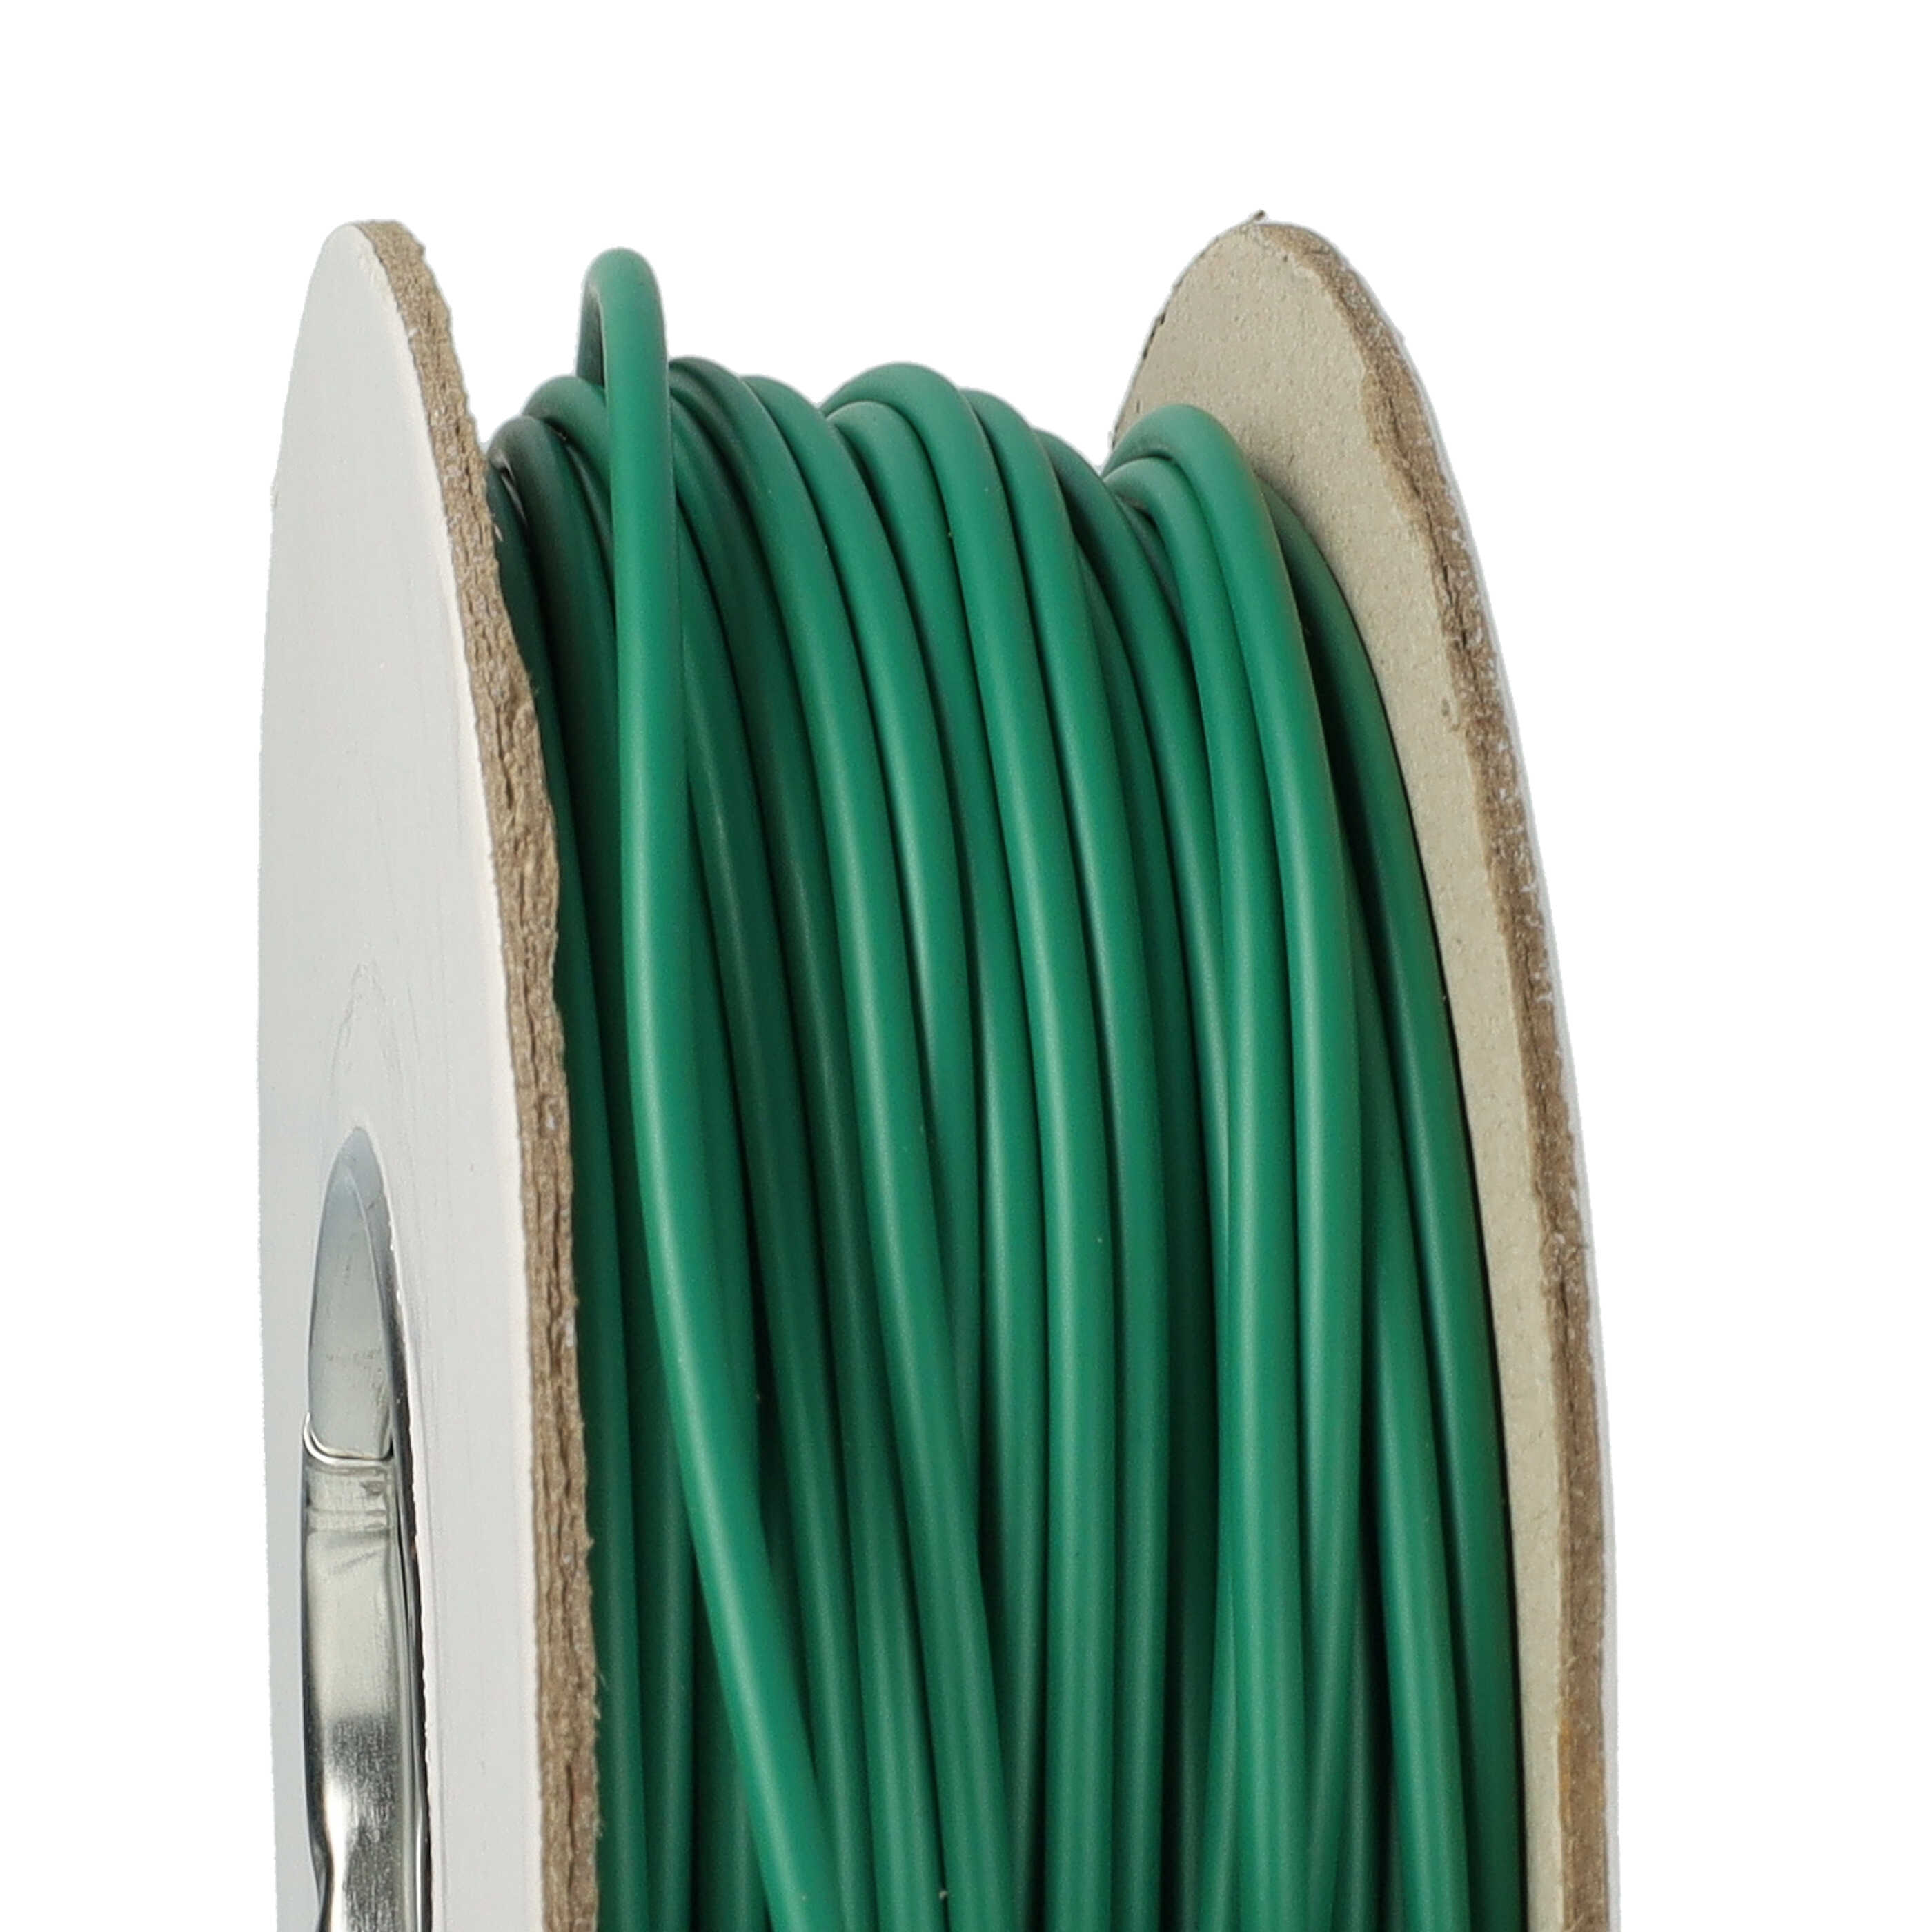 Cable delimitador compatible con robots cortacésped Indego 1000 connect, etc. - 50 m